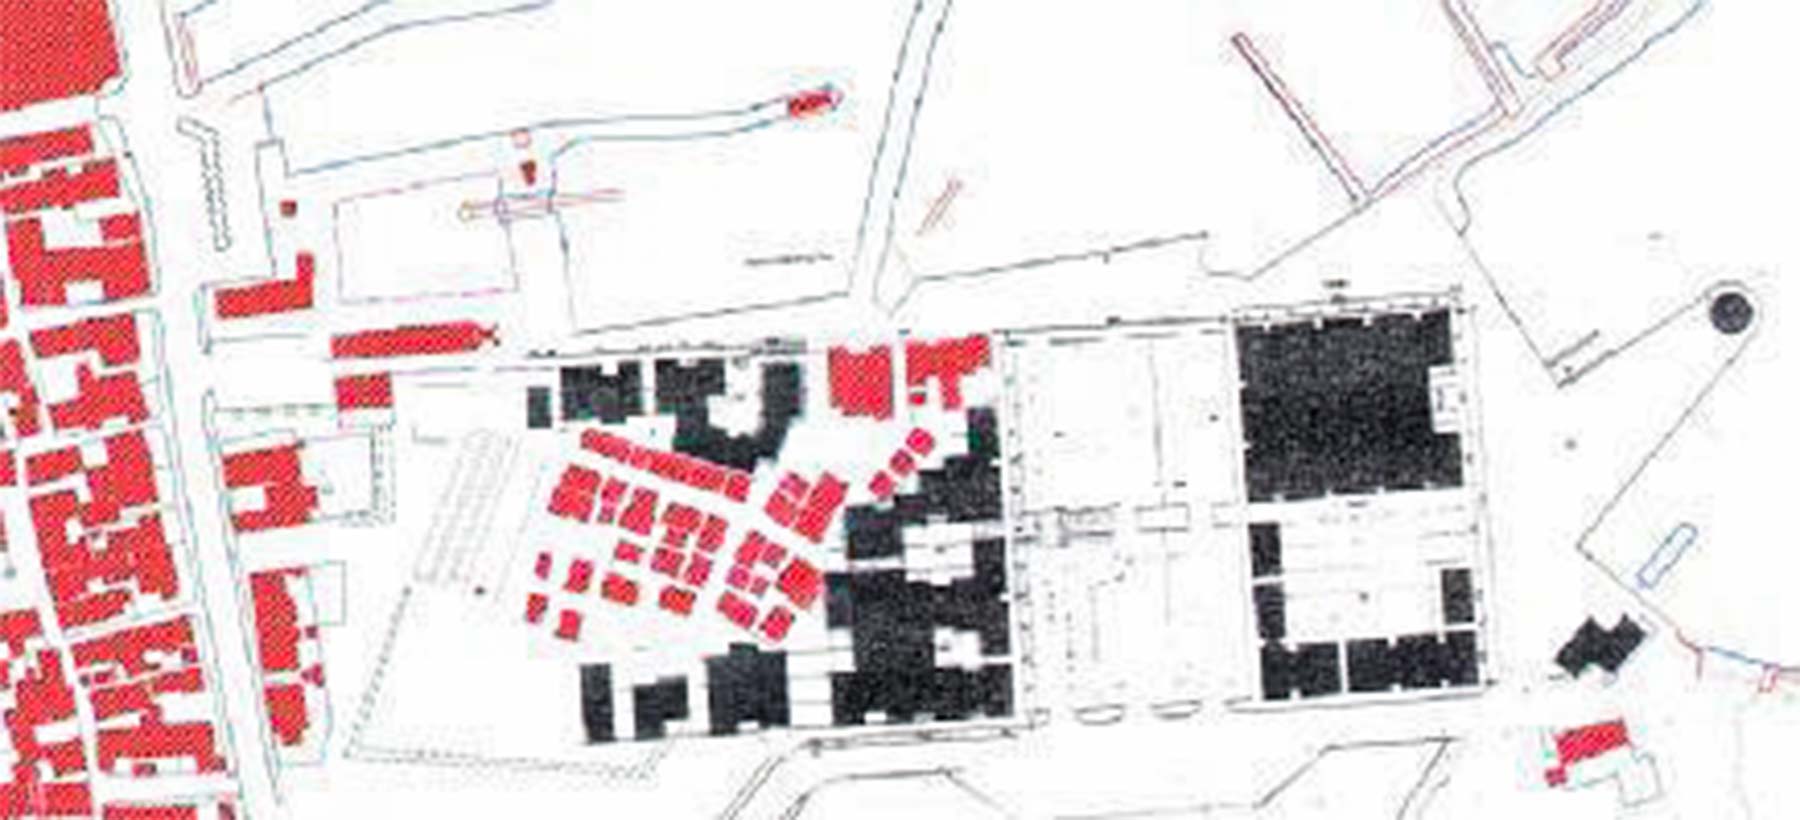 Vejledende bebyggelsesplan, eksisterende bebyggelse er markeret med rødt.